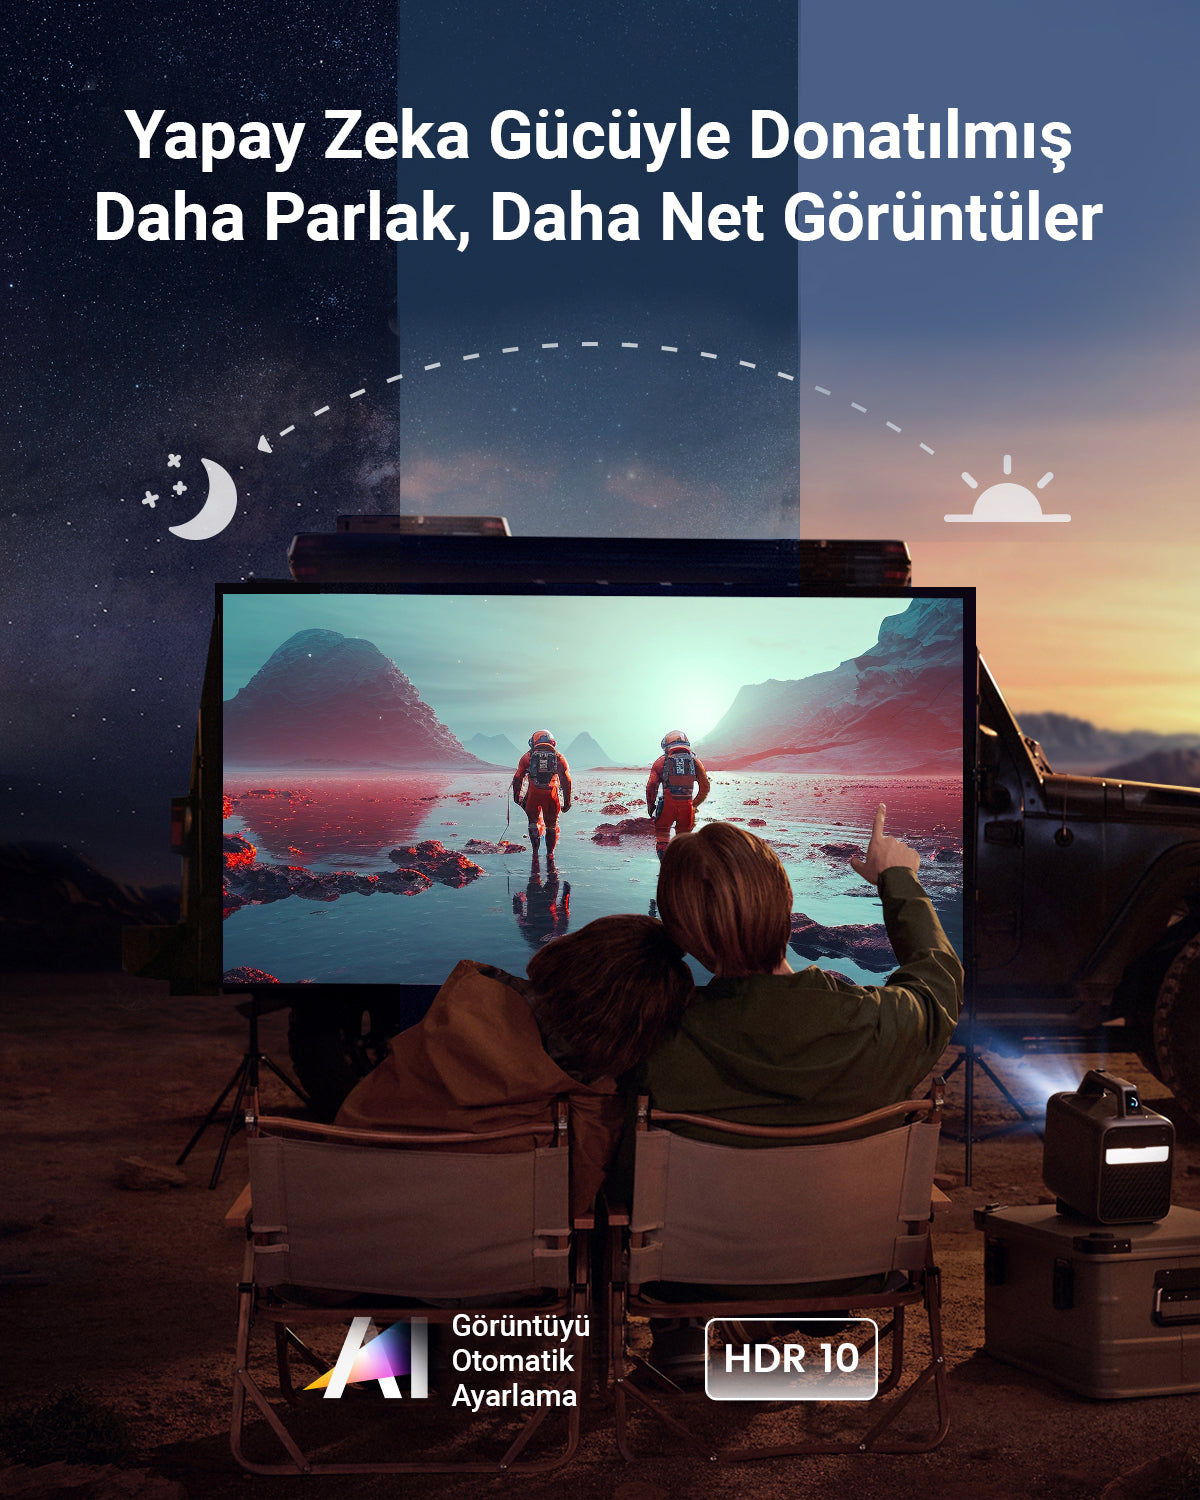 Anker Nebula Mars 3 Smart Portable WiFi Wireless Projector